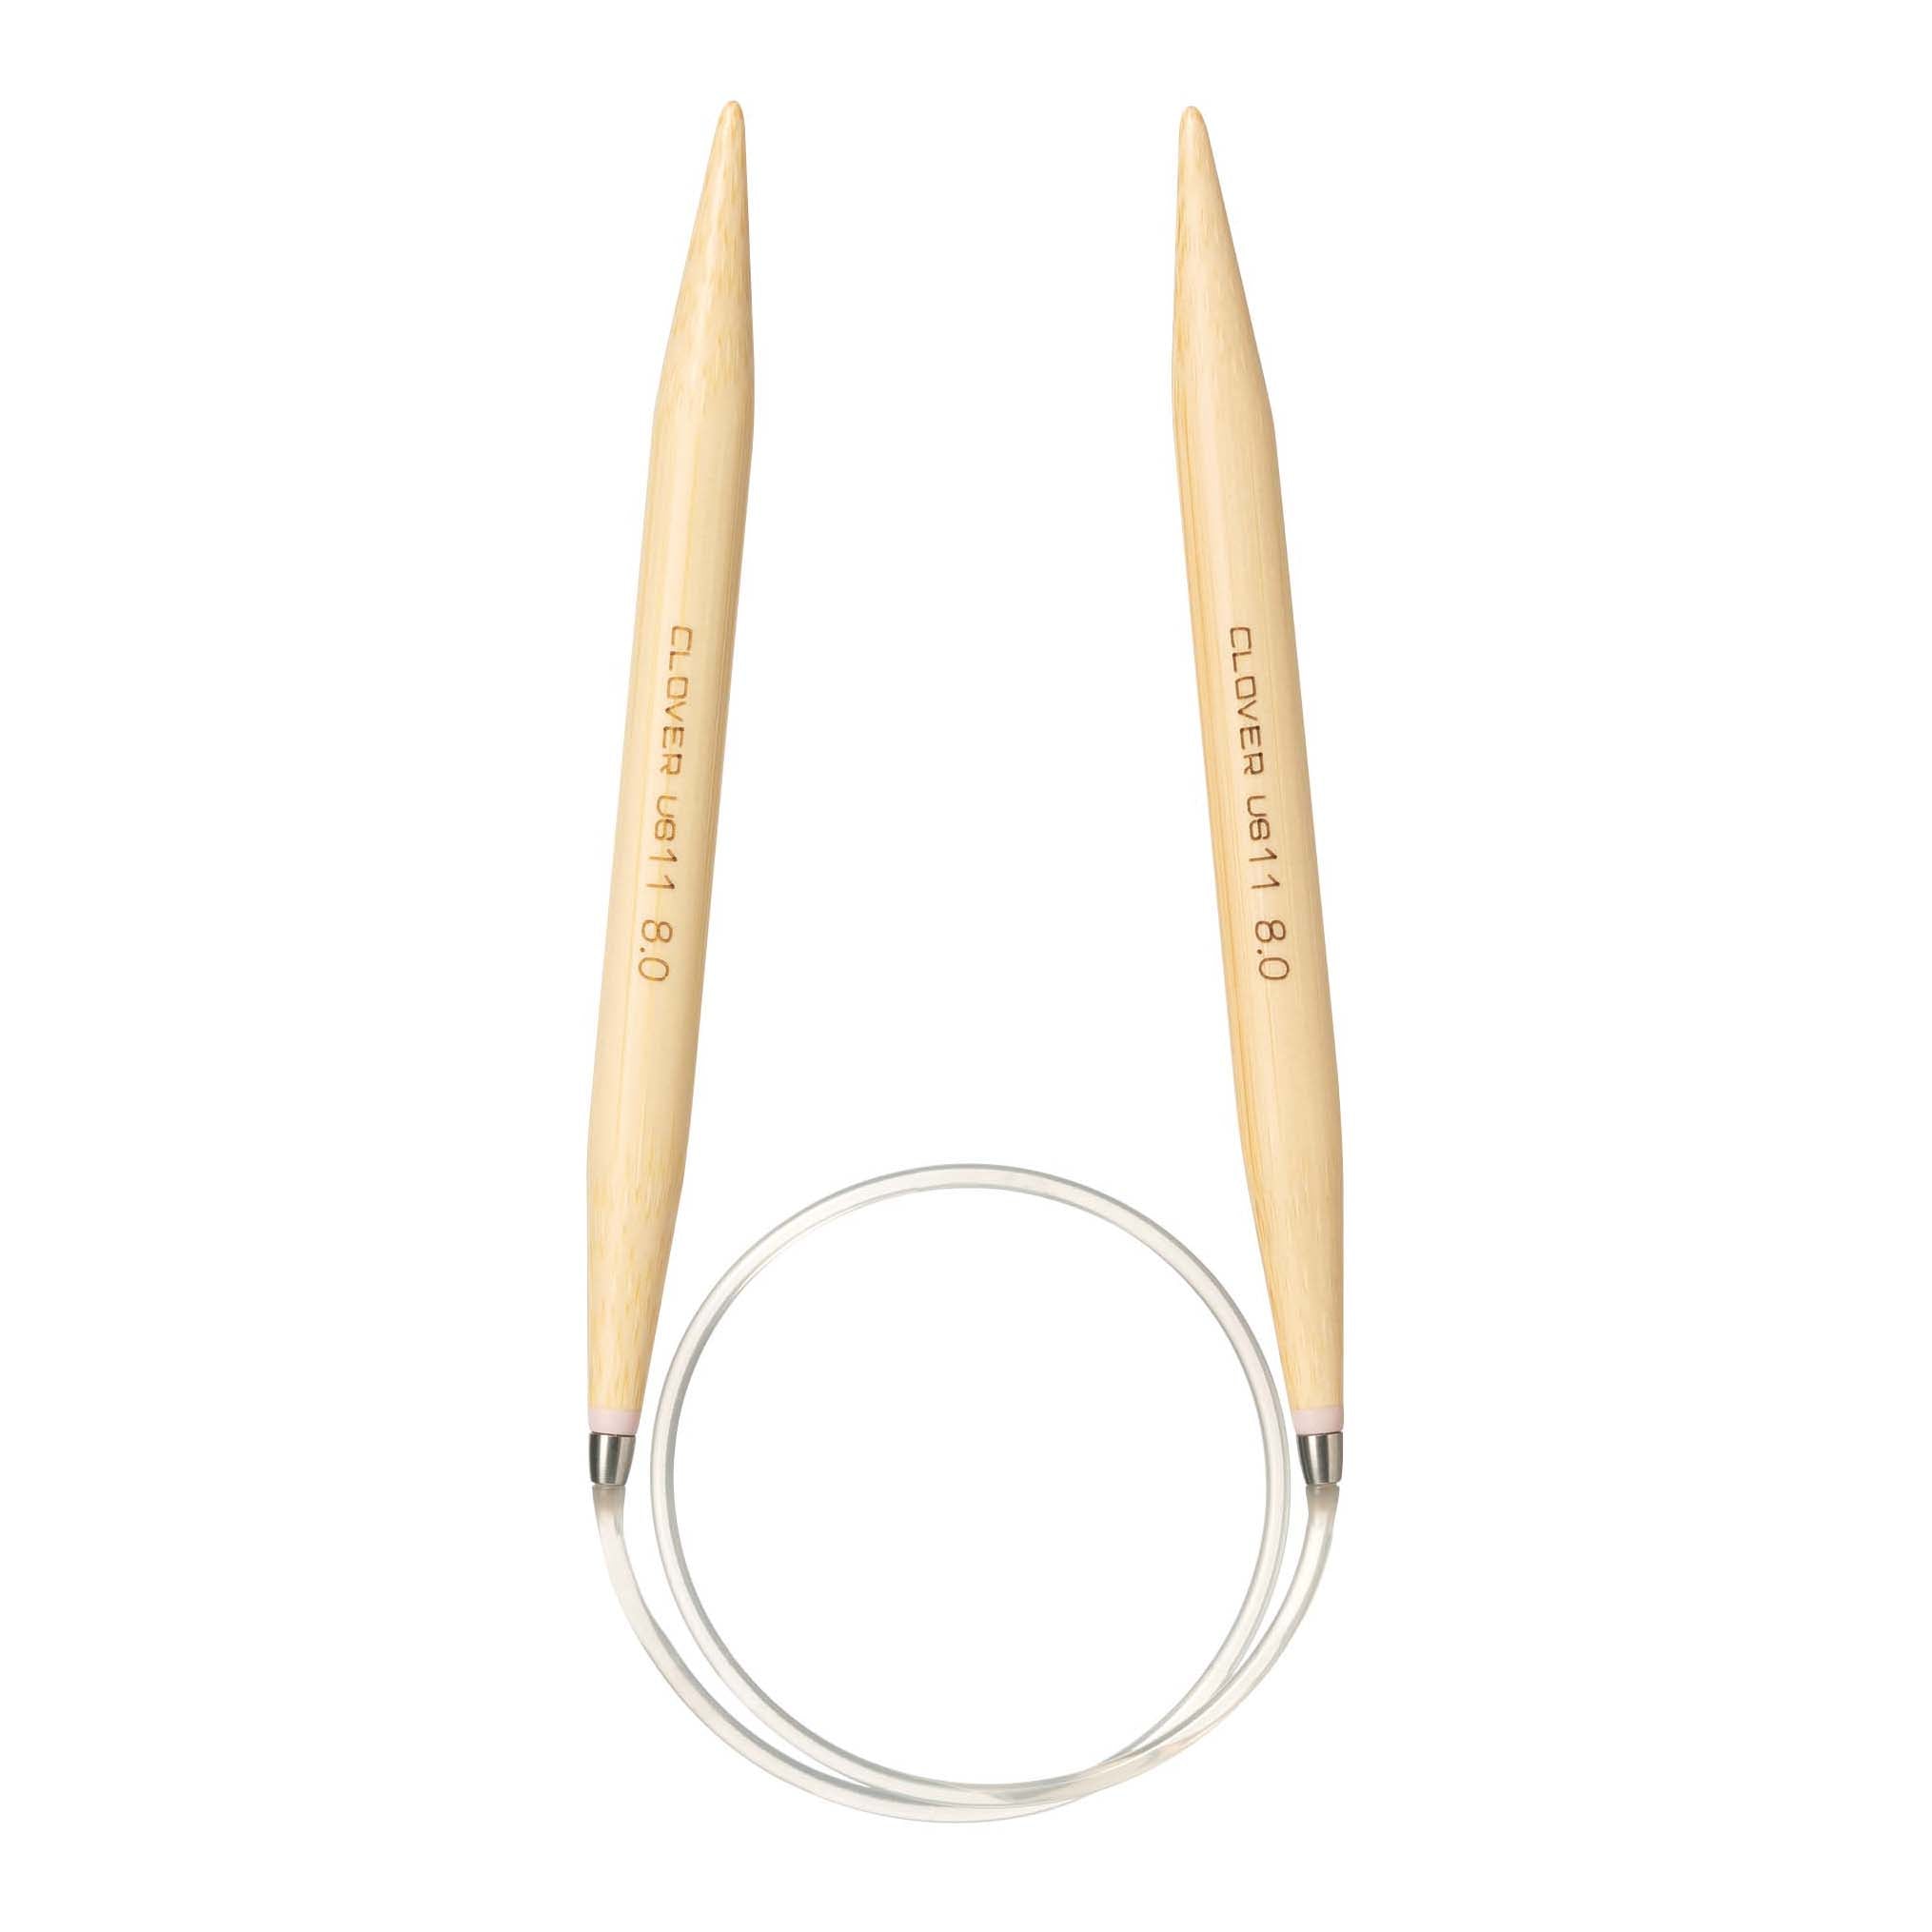 Clover 16 Pro Takumi Circular Bamboo Needles 11 US / 8.0mm